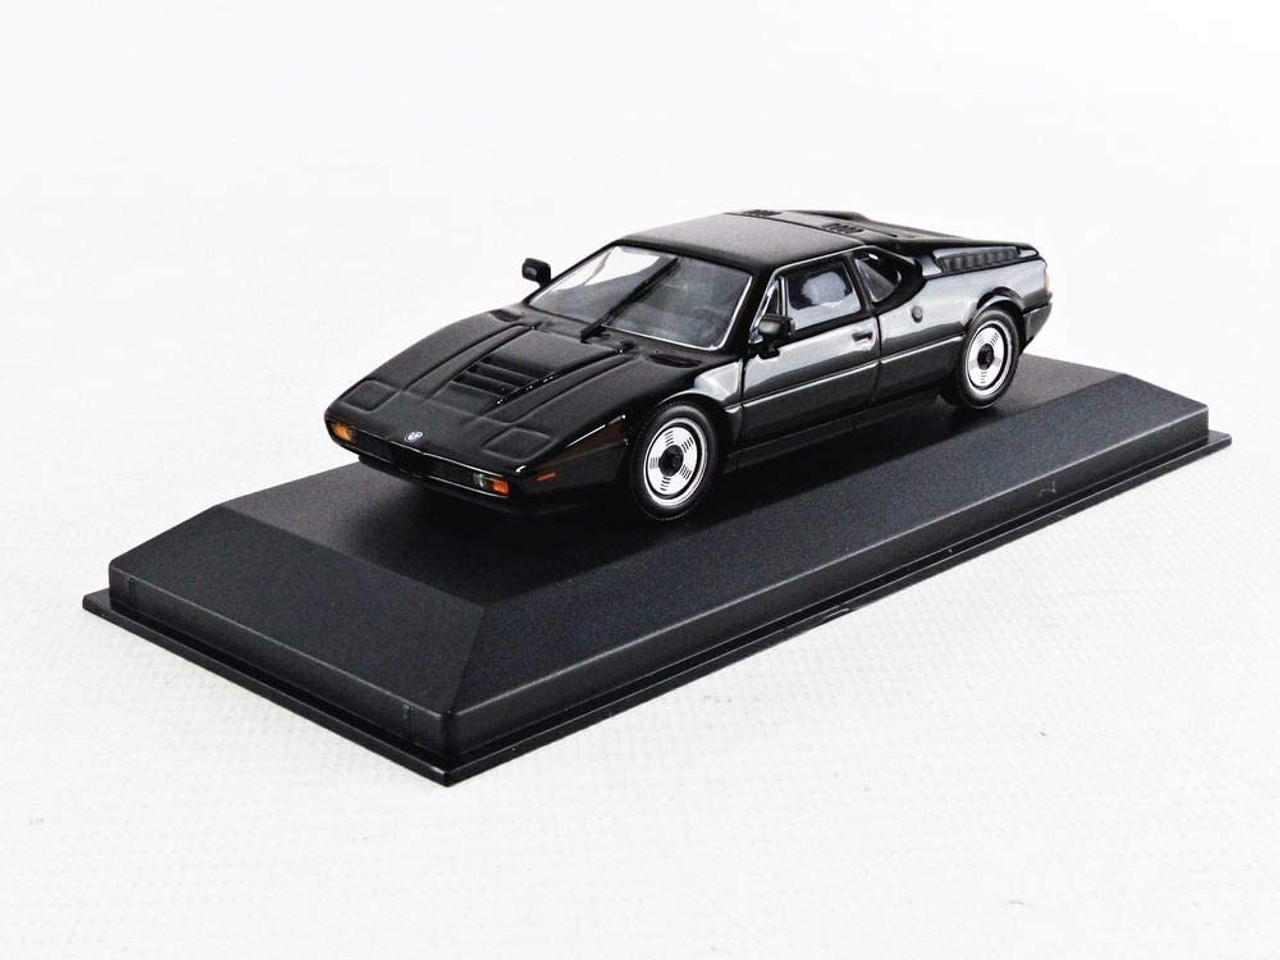 1/43 Minichamps 1979 BMW M1 (Black) Diecast Car Model